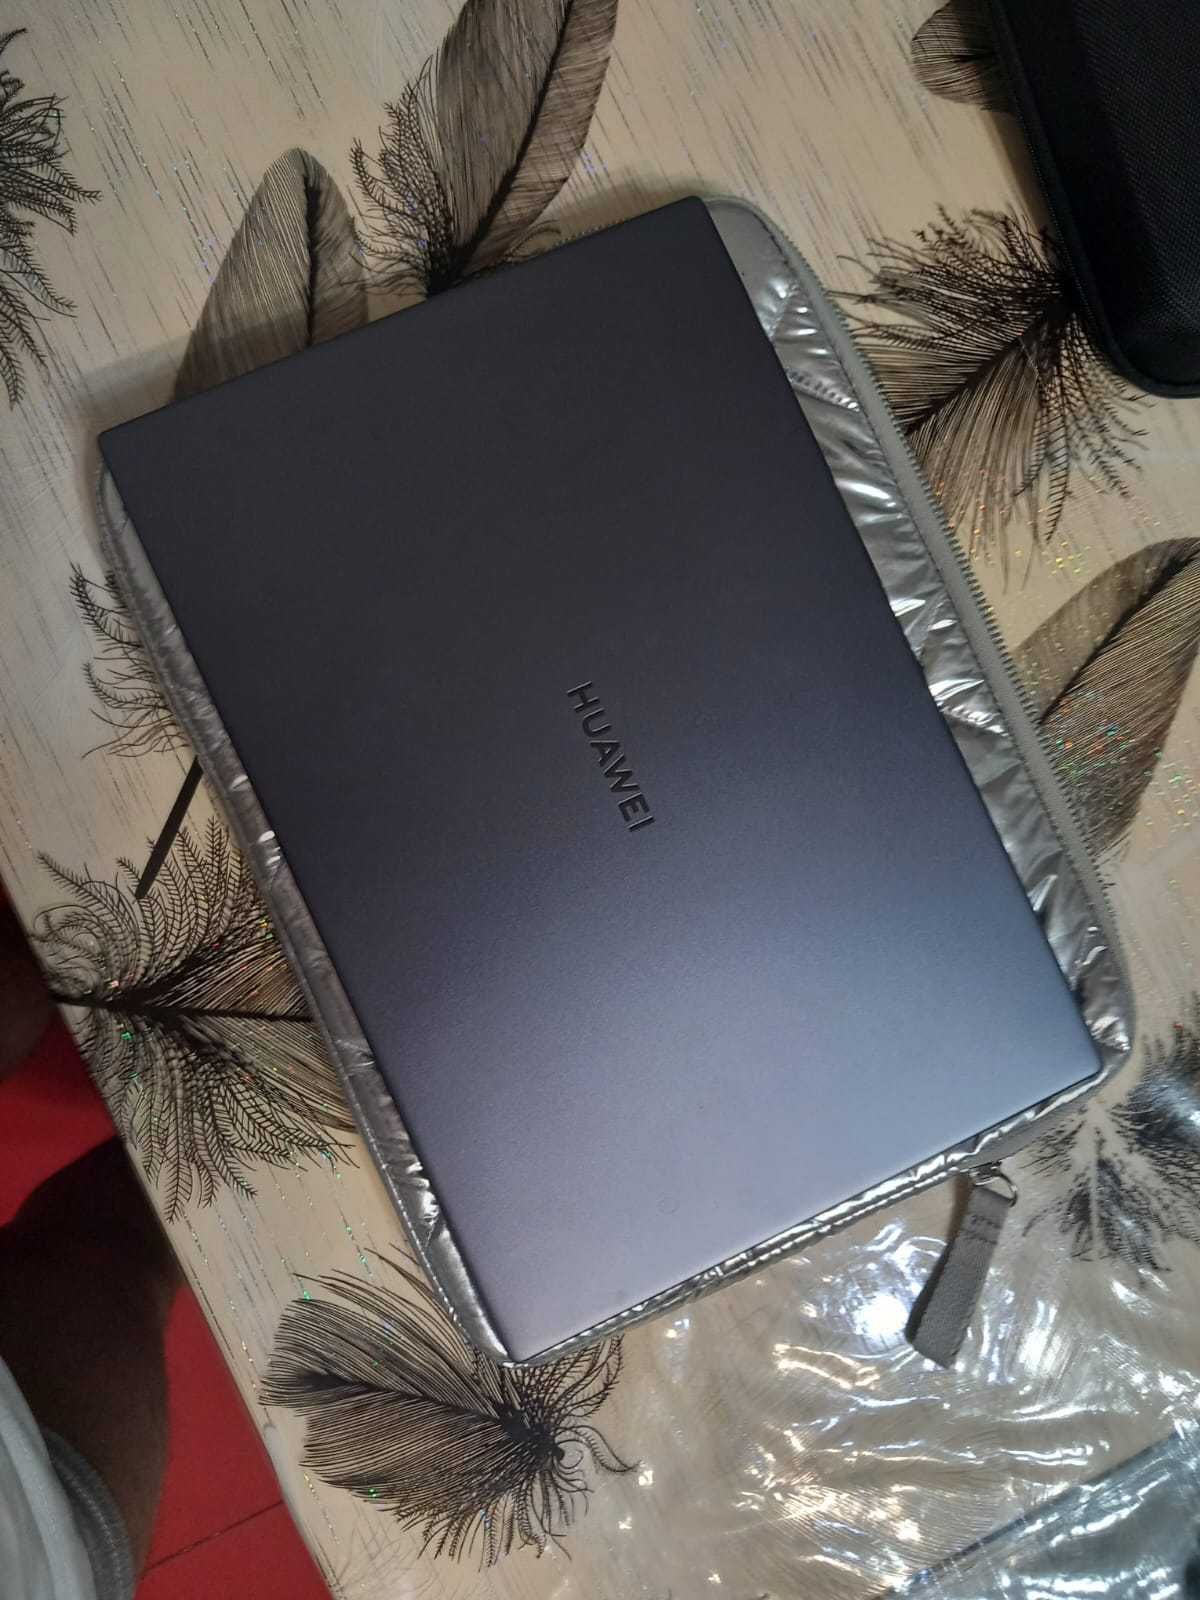 Vând laptop  Huawei   2000 de lei pt mai multe detali la Telf